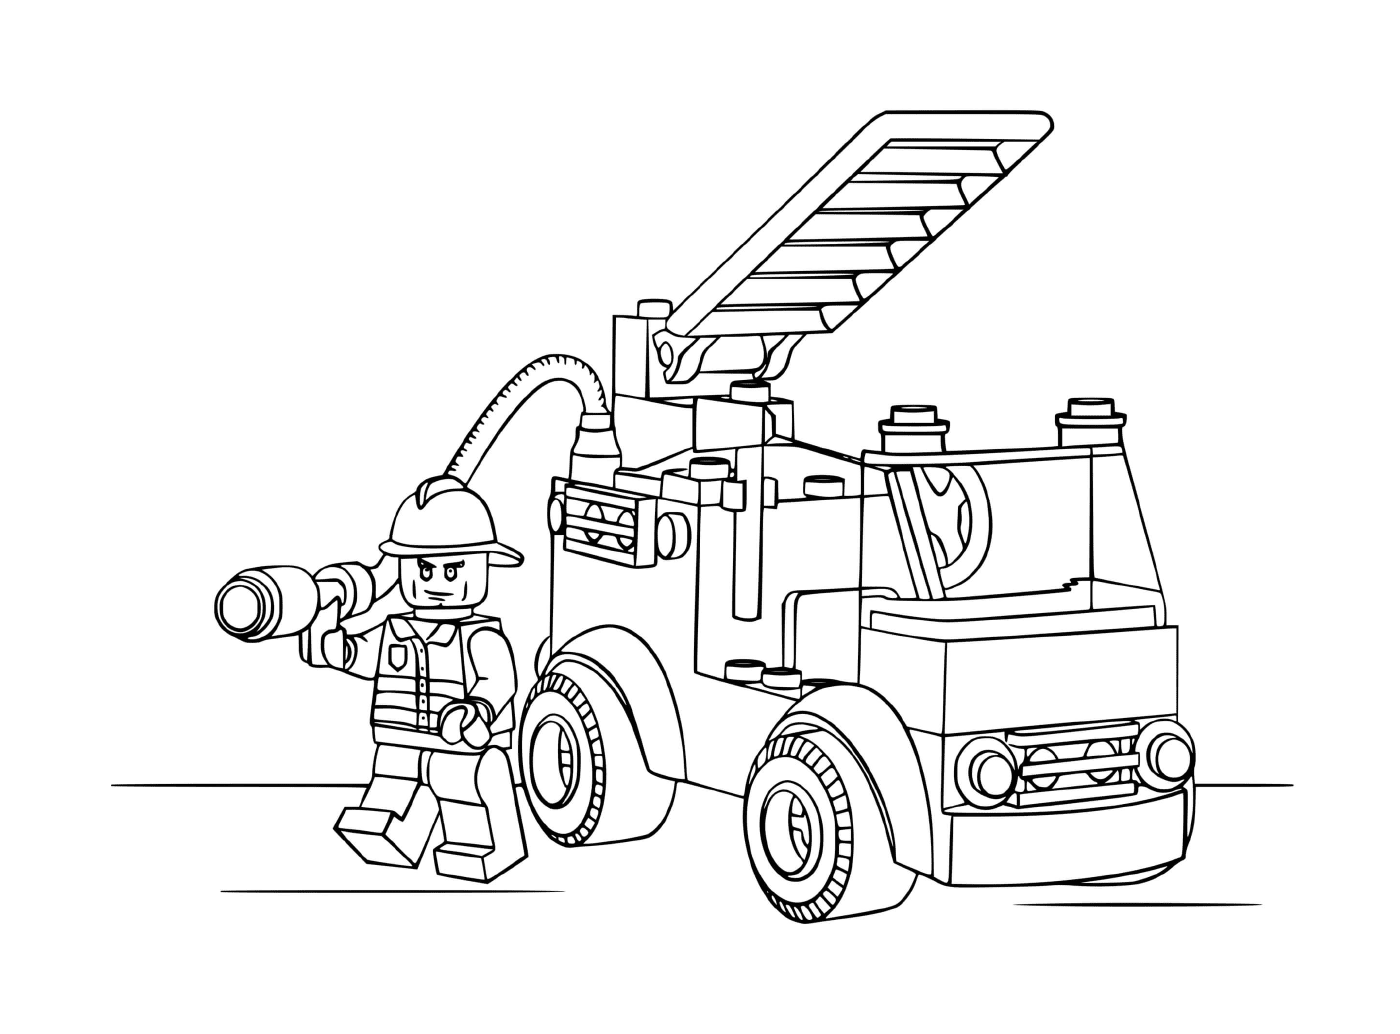  Пожарная машина < < Лего > > со спасателем 